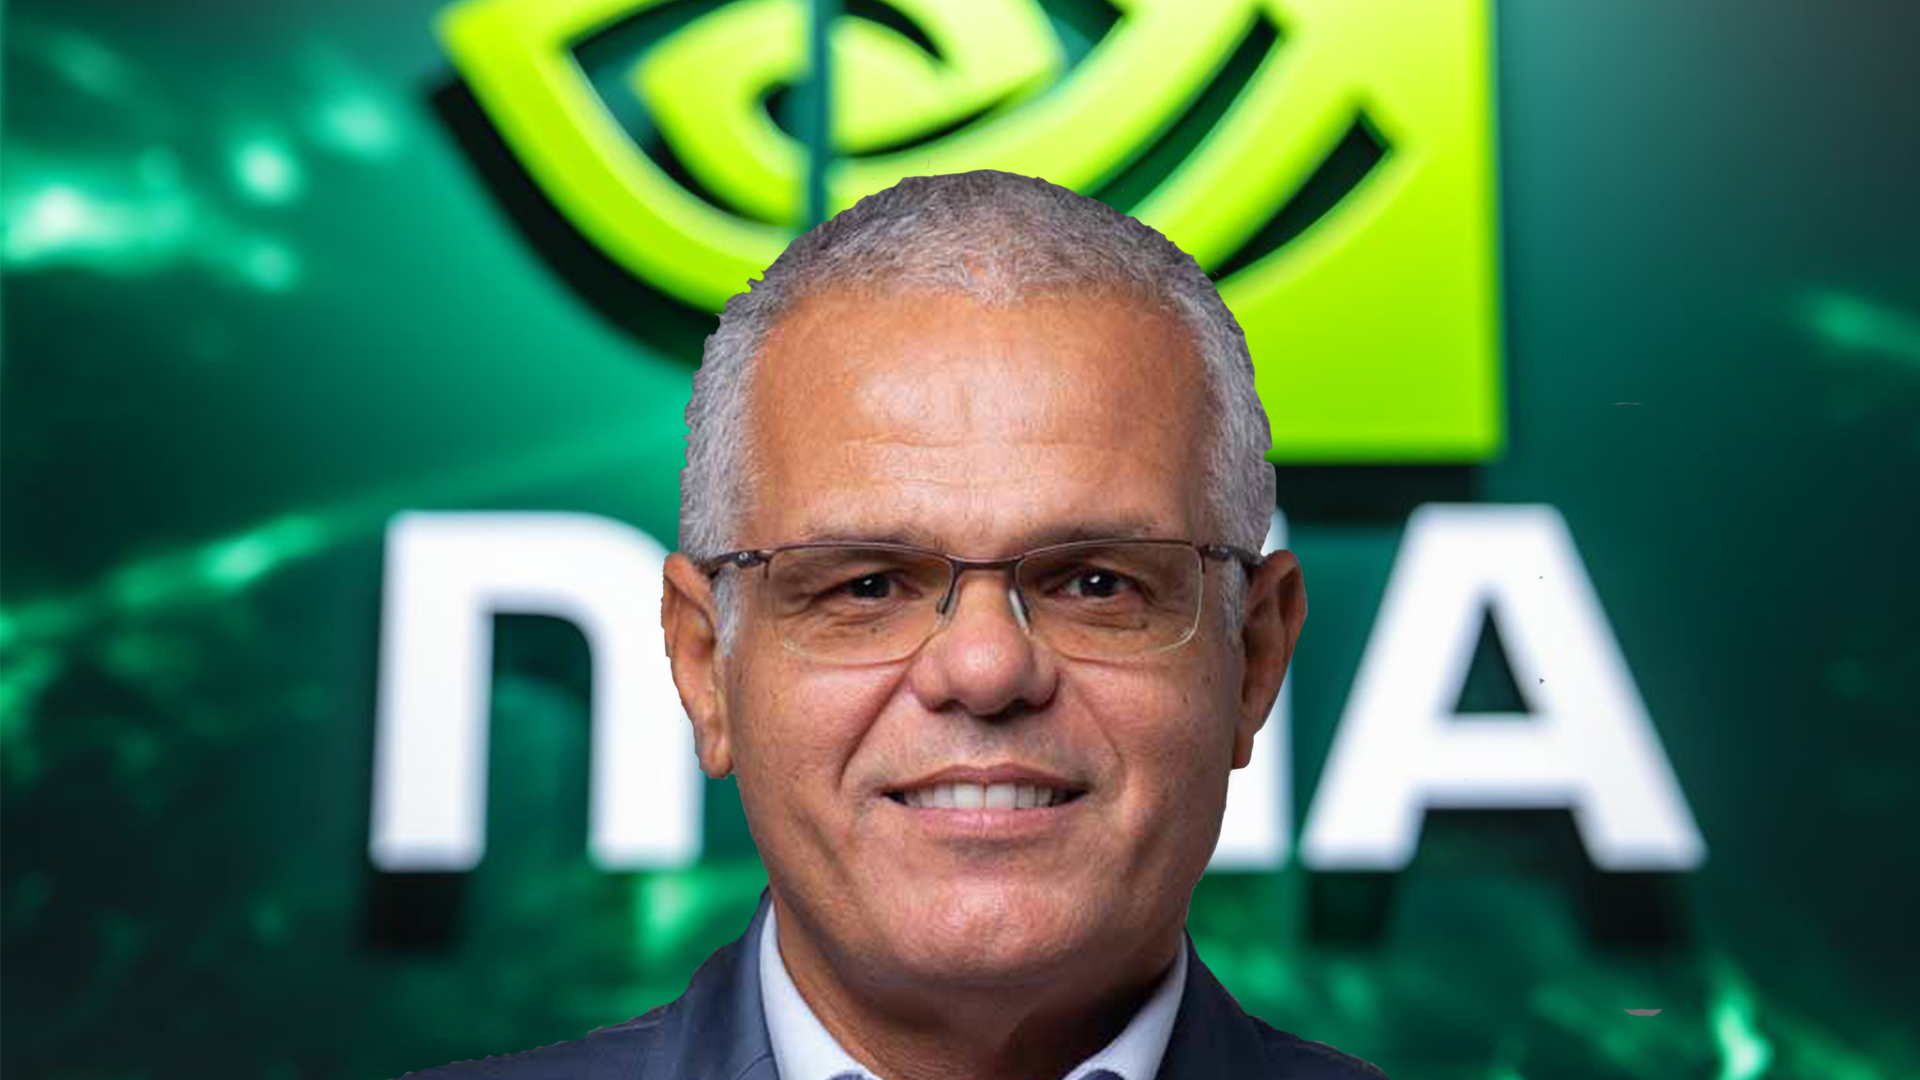 Diretor da Nvidia revela os 5 pilares que sustentam o sucesso da empresa – Web Summit Rio